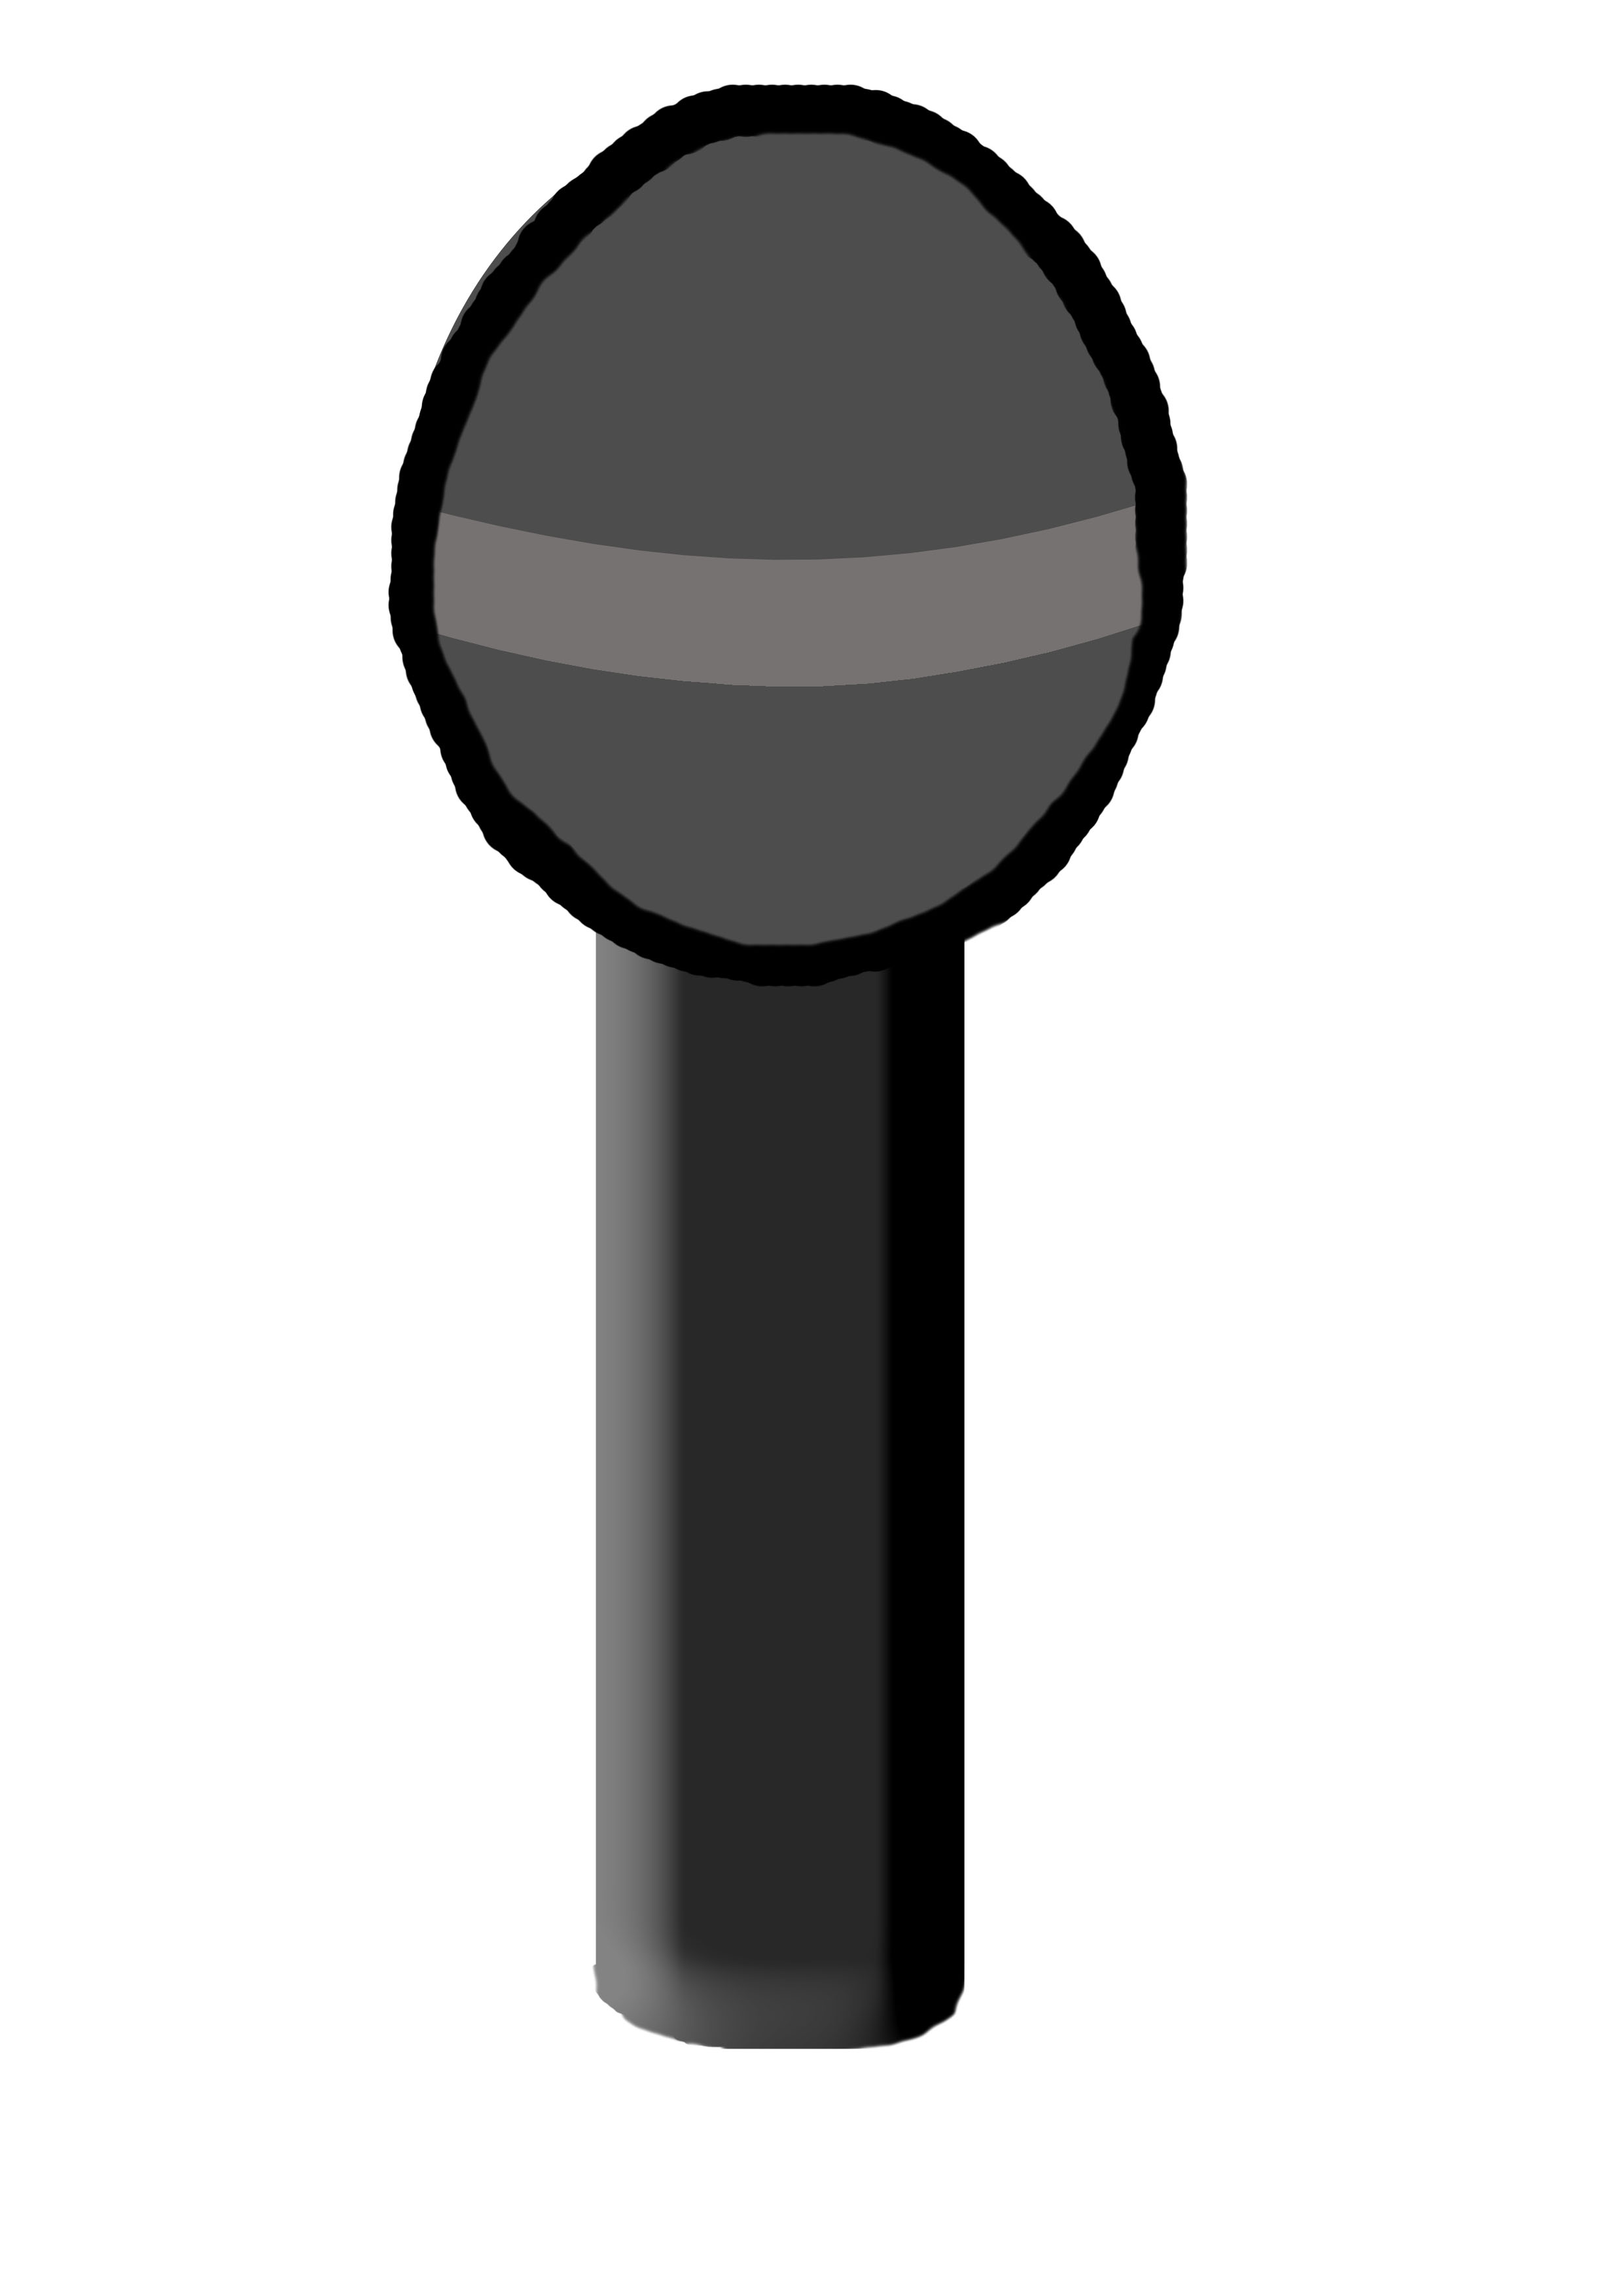 Azden Microphones